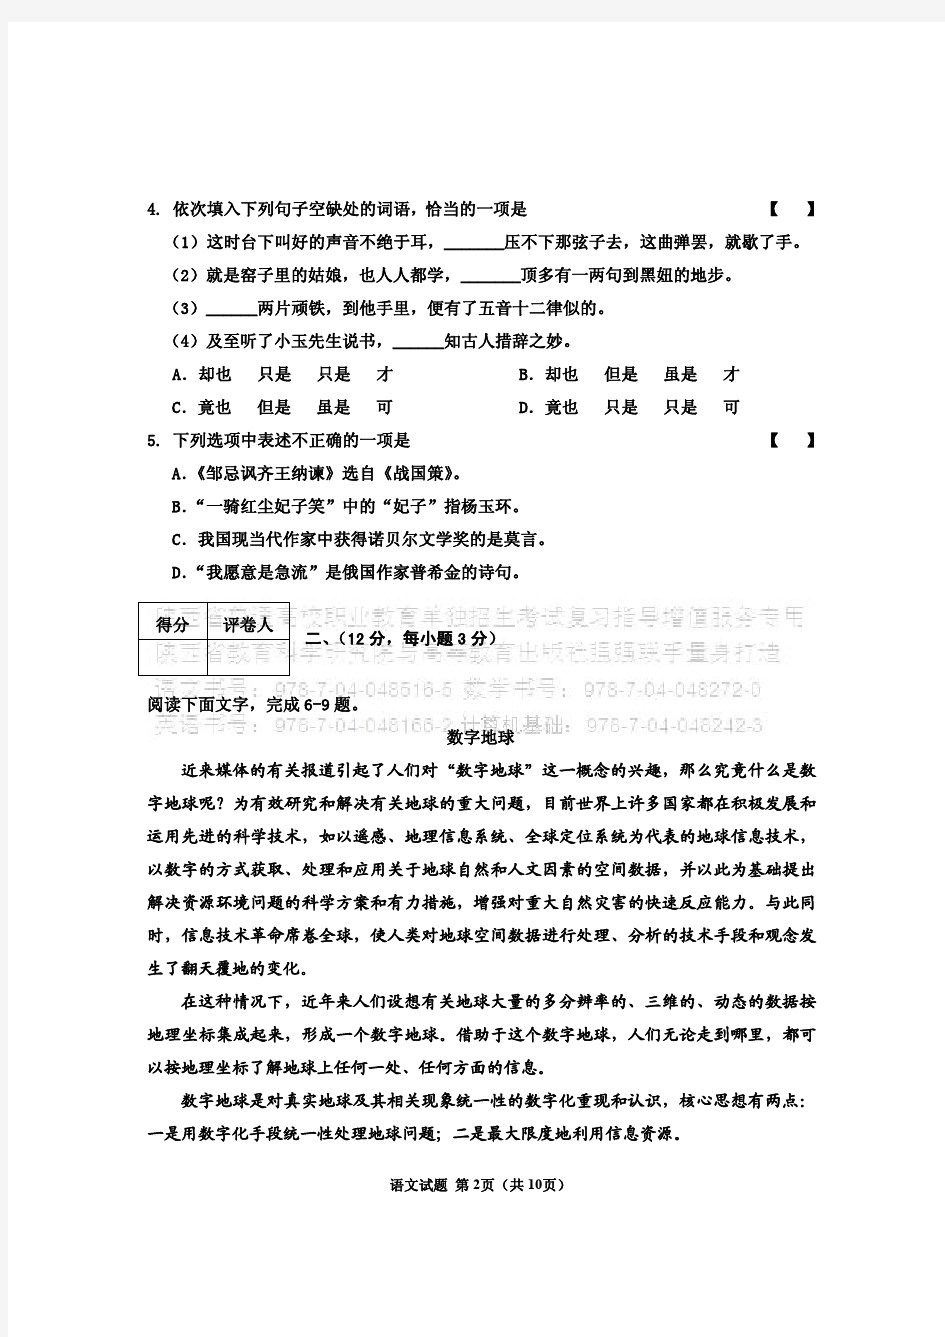 2018年陕西省普通高校职业教育单独招生考试语文